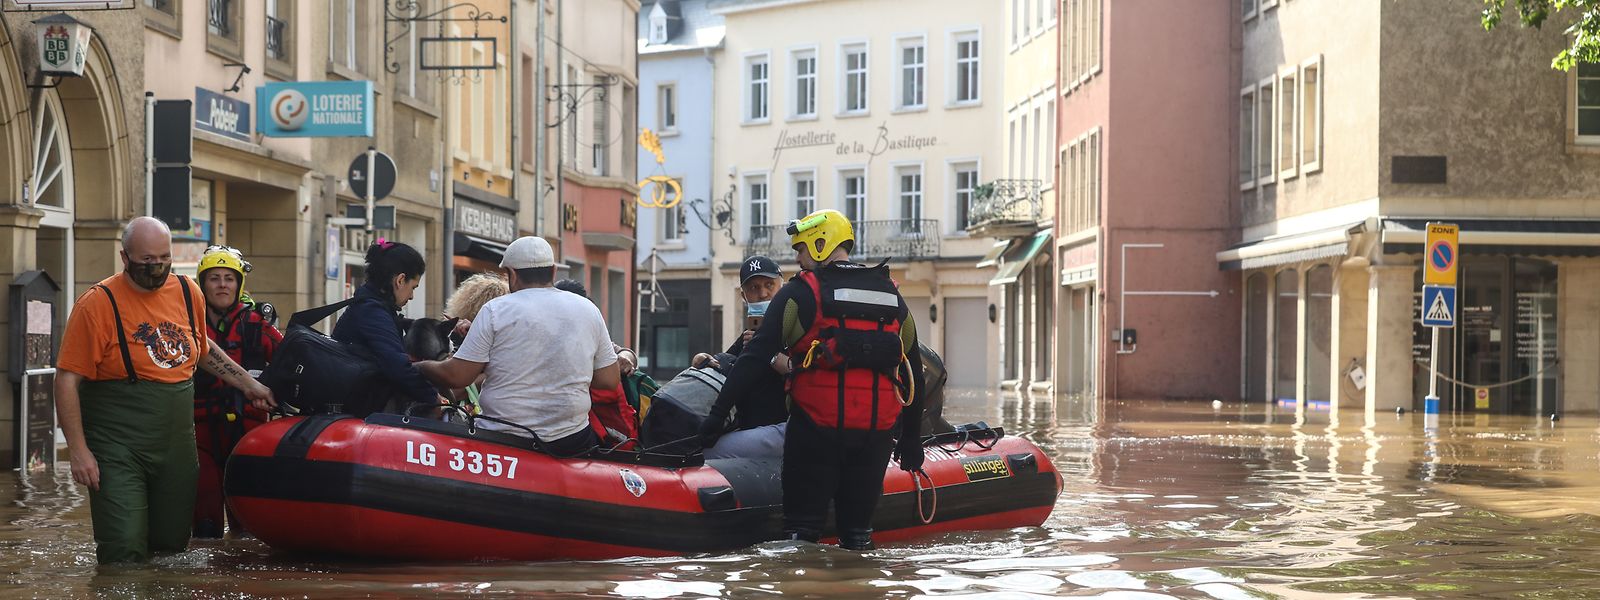 Des heures de pluie ont provoqué des inondations à la mi-juillet. Certaines localités, ici Echternach, ont été complètement inondées. 